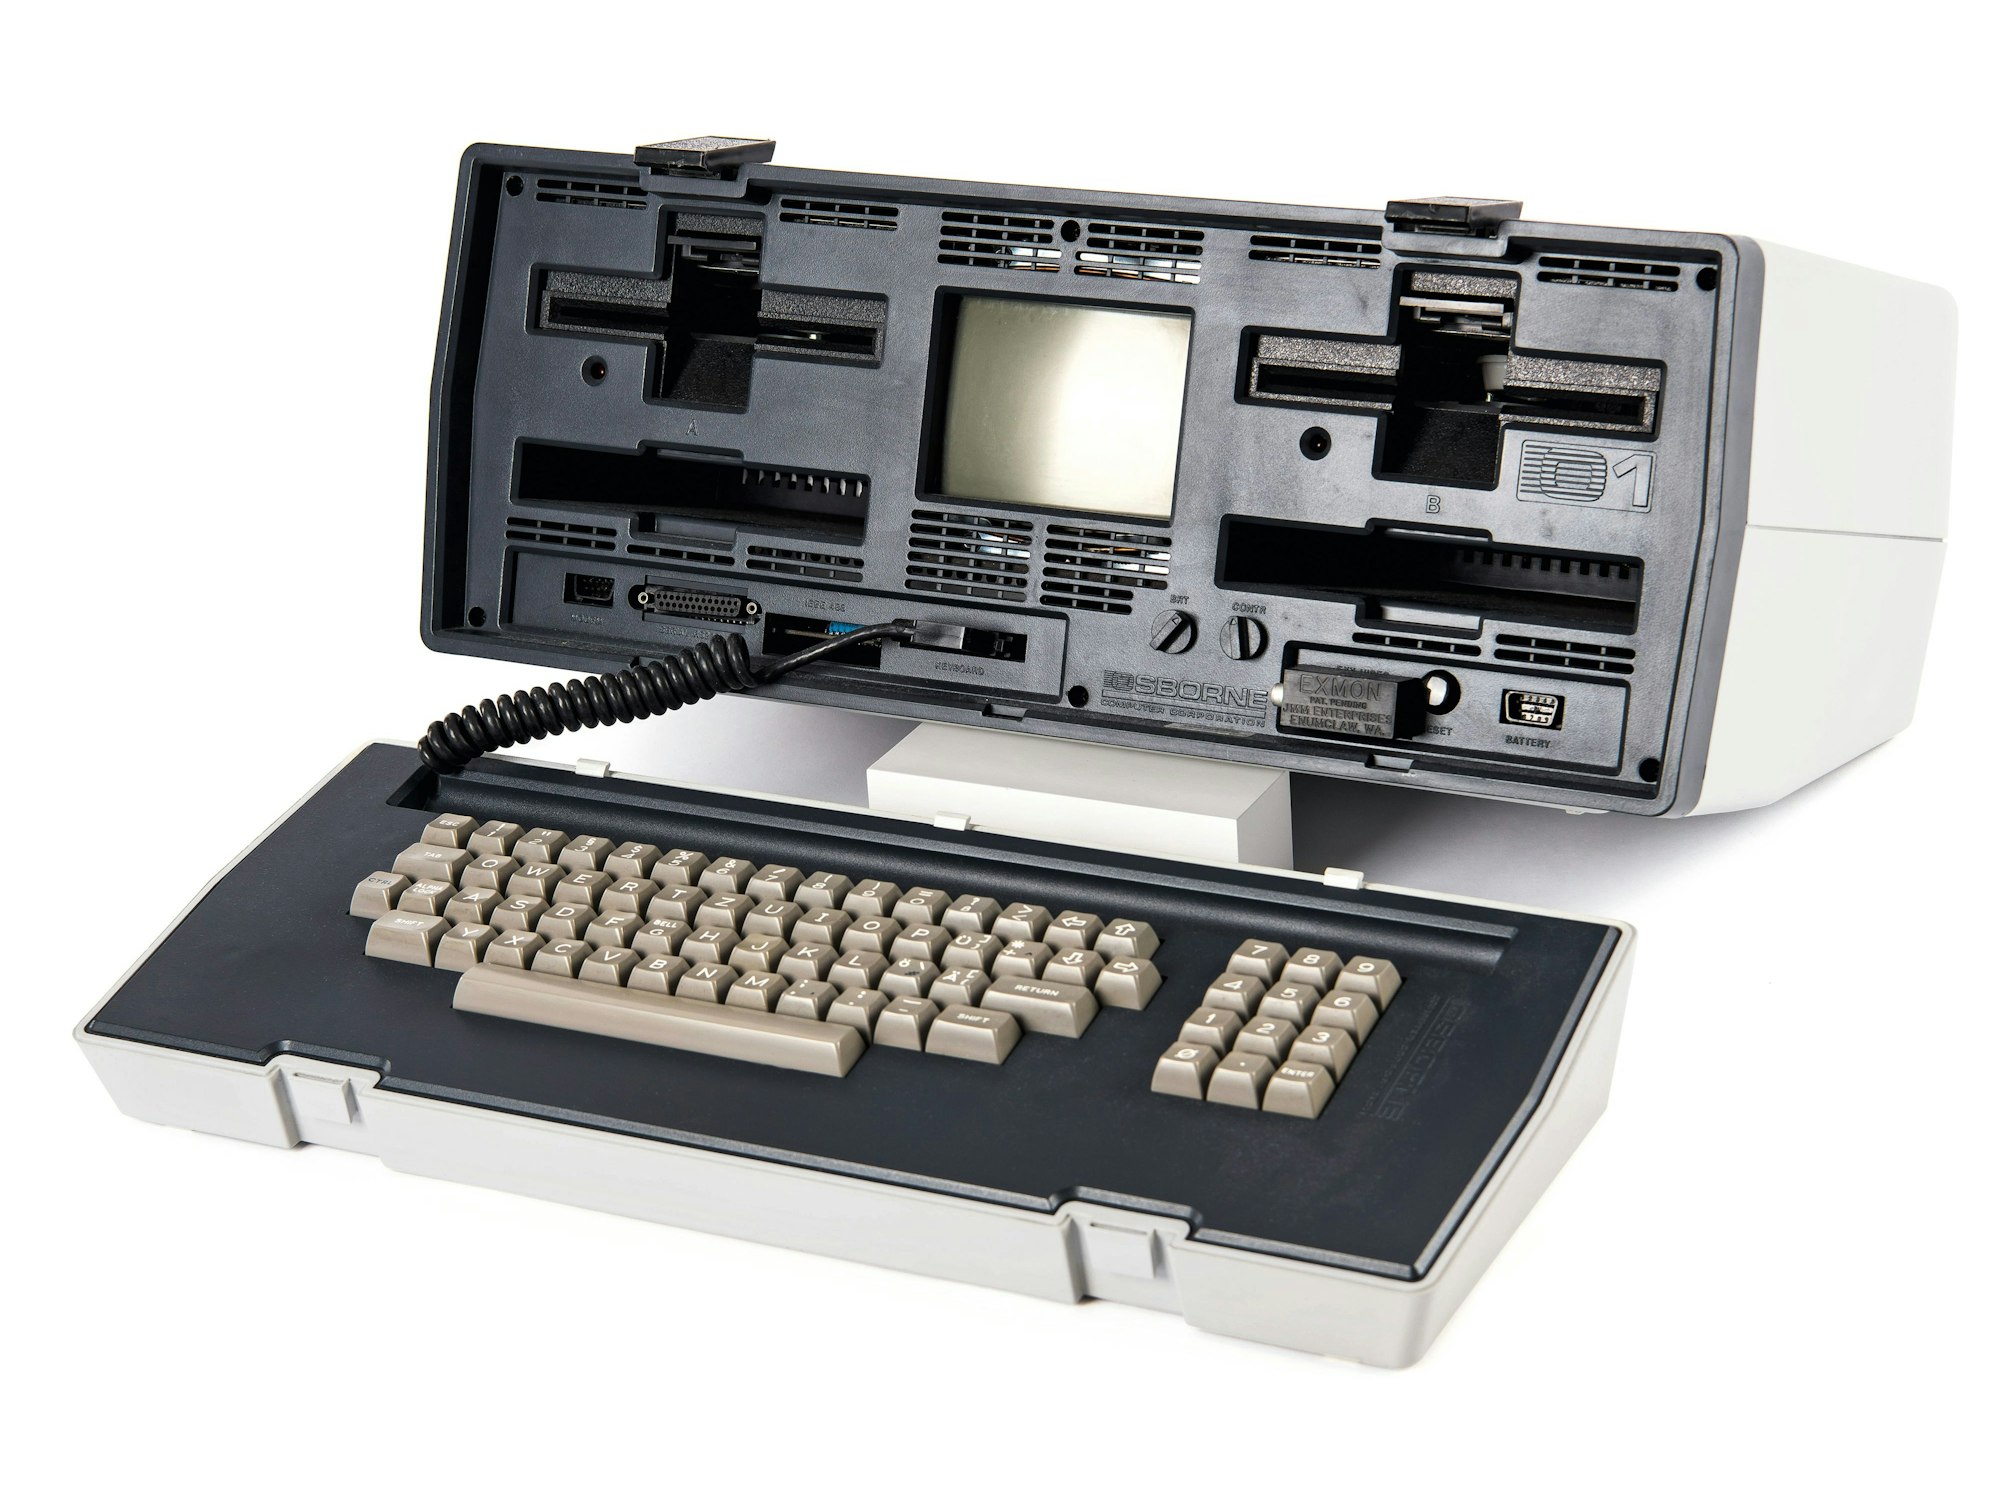 1981 wurde der Osborne 1 entwickelt von Adam Osborne (1939–2003), war der erster Laptop, der kommerziell erhältlich war
vermarktet. Bild zur Verfügung gestellt vom Taschen Verlag zum Buch "The Computer"

